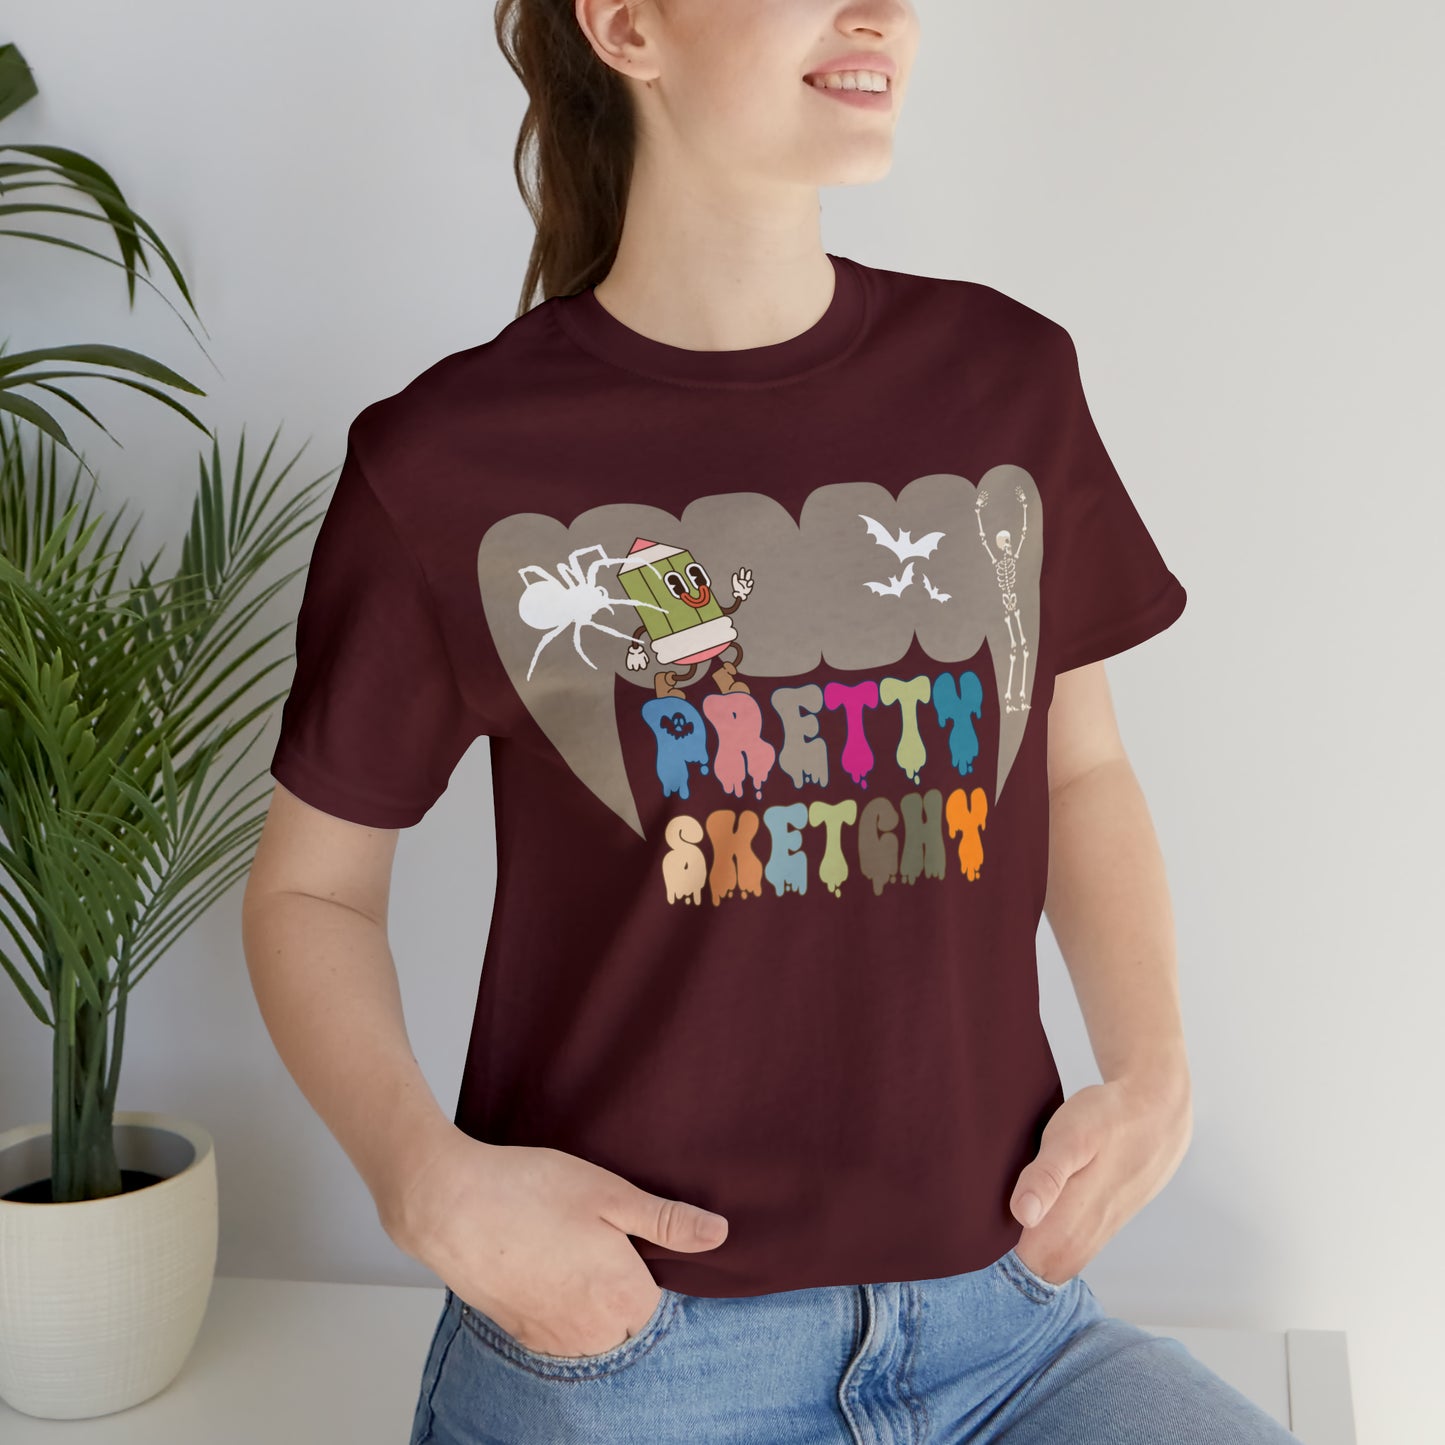 Art Teacher Shirt, Art Lover Gift, Pretty Sketchy Shirt for Halloween Gift , Art Lover Shirt, Gift For Teacher, T310